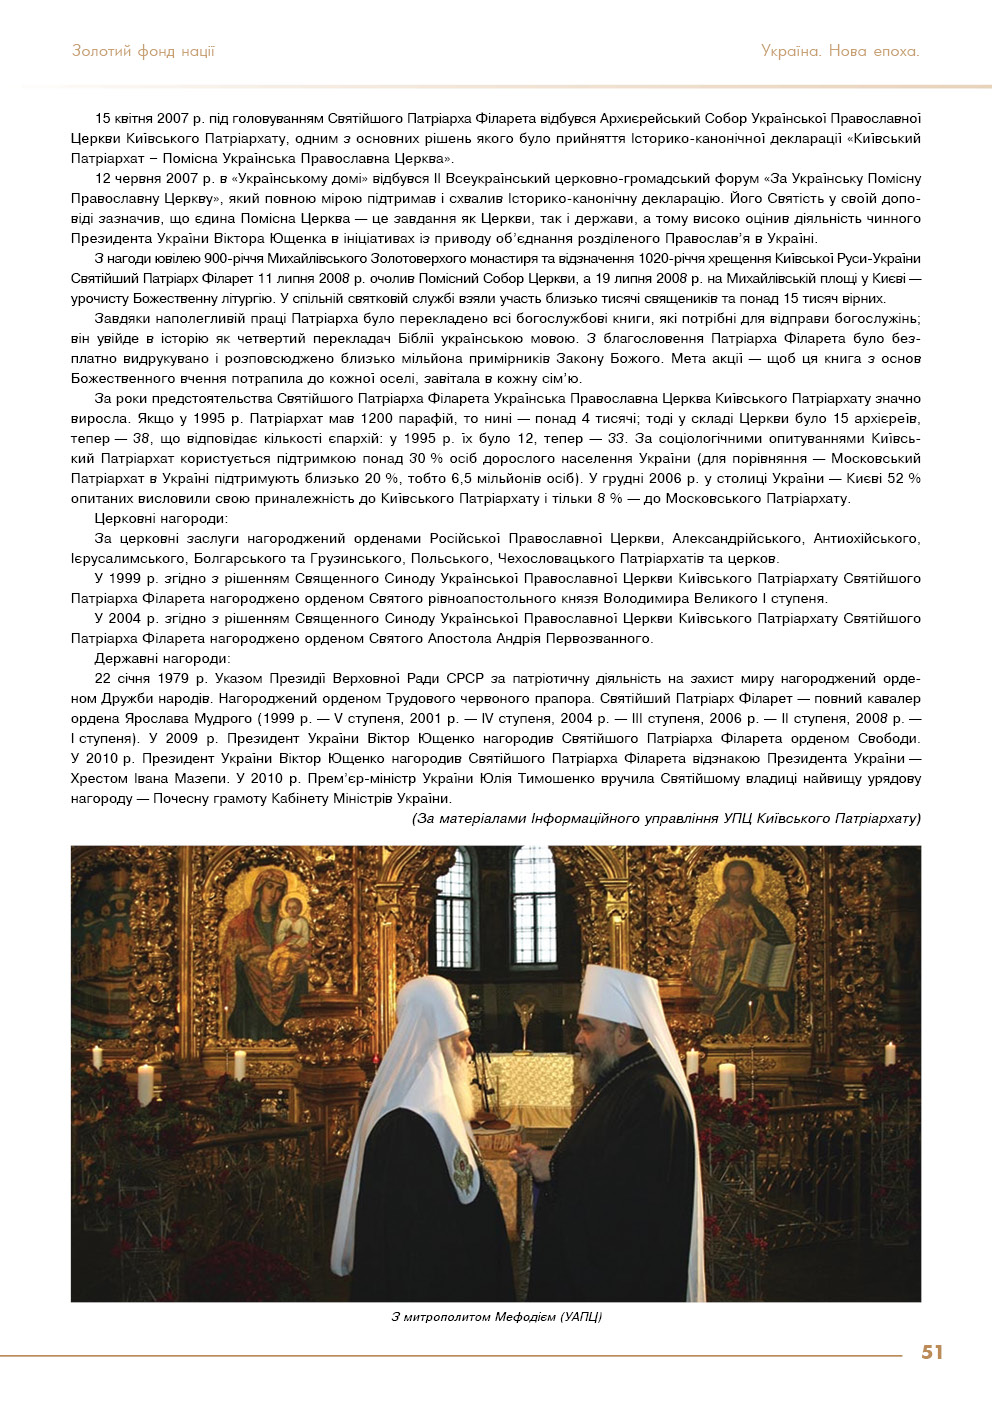 Всіма помислами і діями - за Українську помісну православну церкву - ФІЛАРЕТ